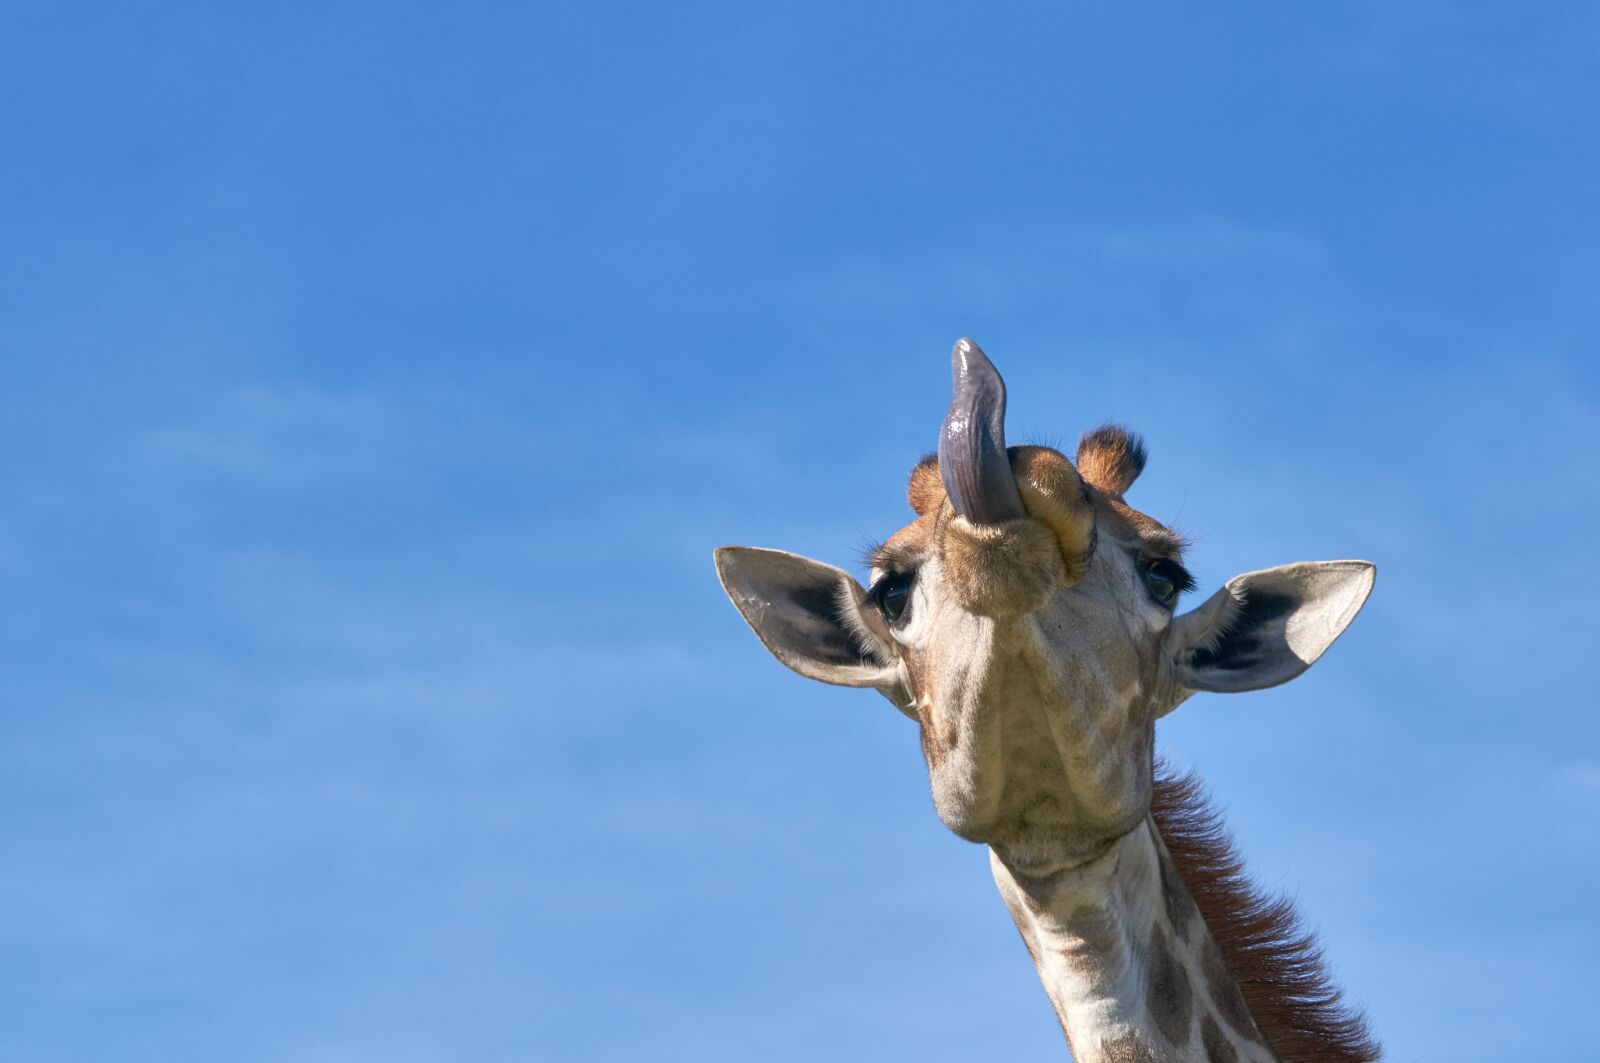 Sony Alpha NEX-6 sample photo. Giraffe, tongue, safari photography